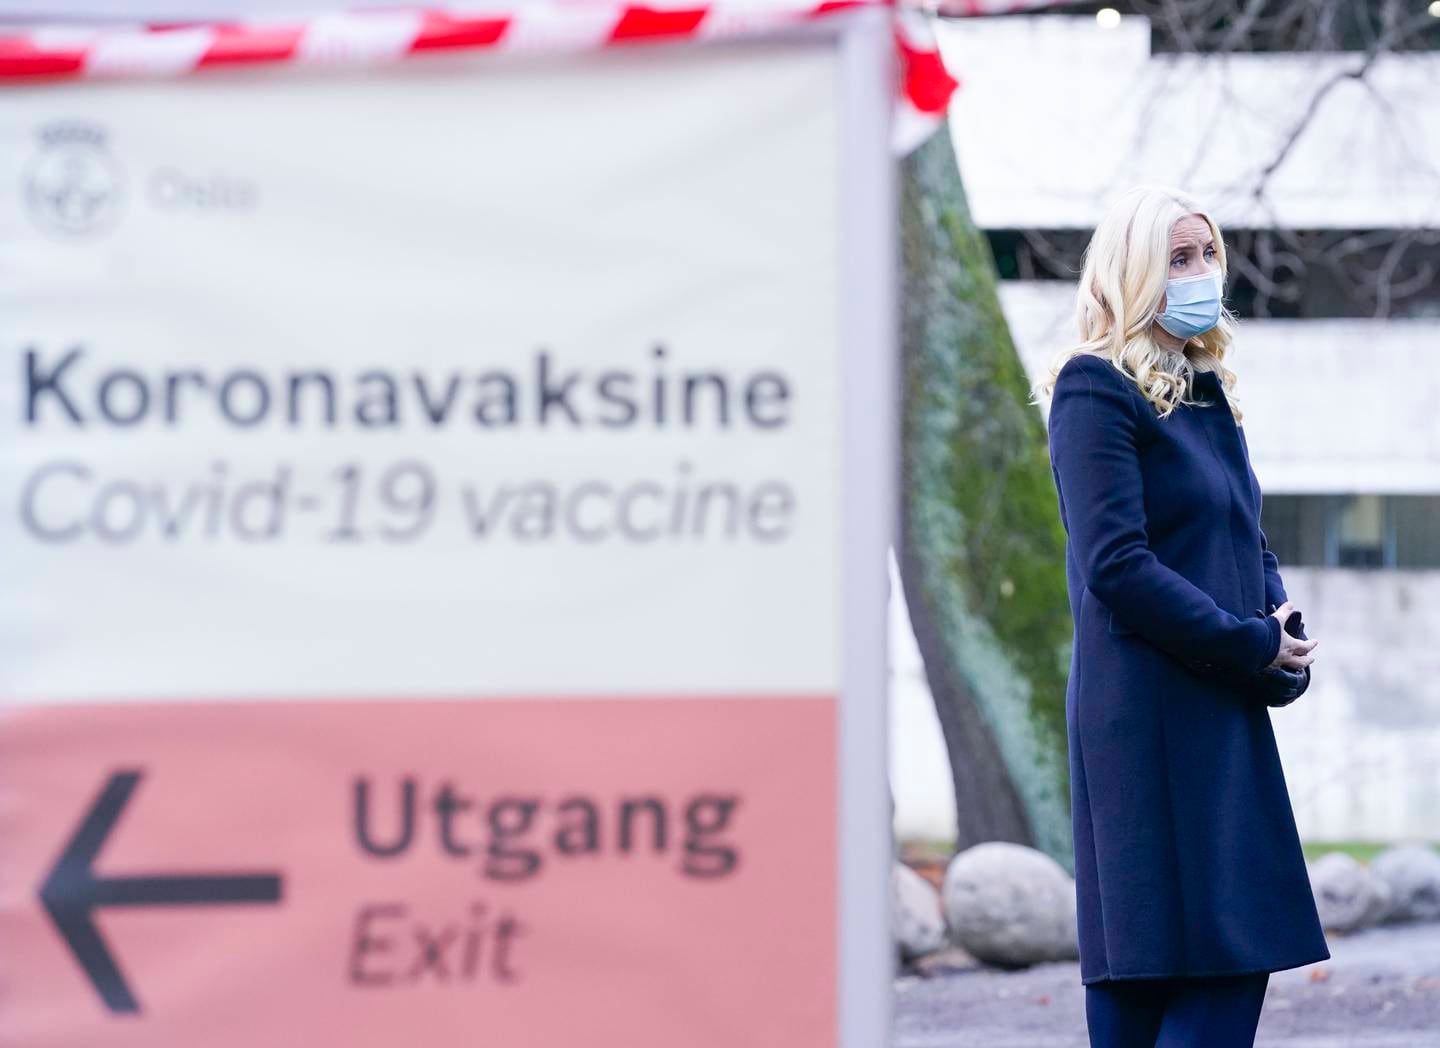 Kronprinsesse Mette-Marit besøker vaksinesenteret i Hausmanns gate I Oslo.
Foto: Lise Åserud / NTB